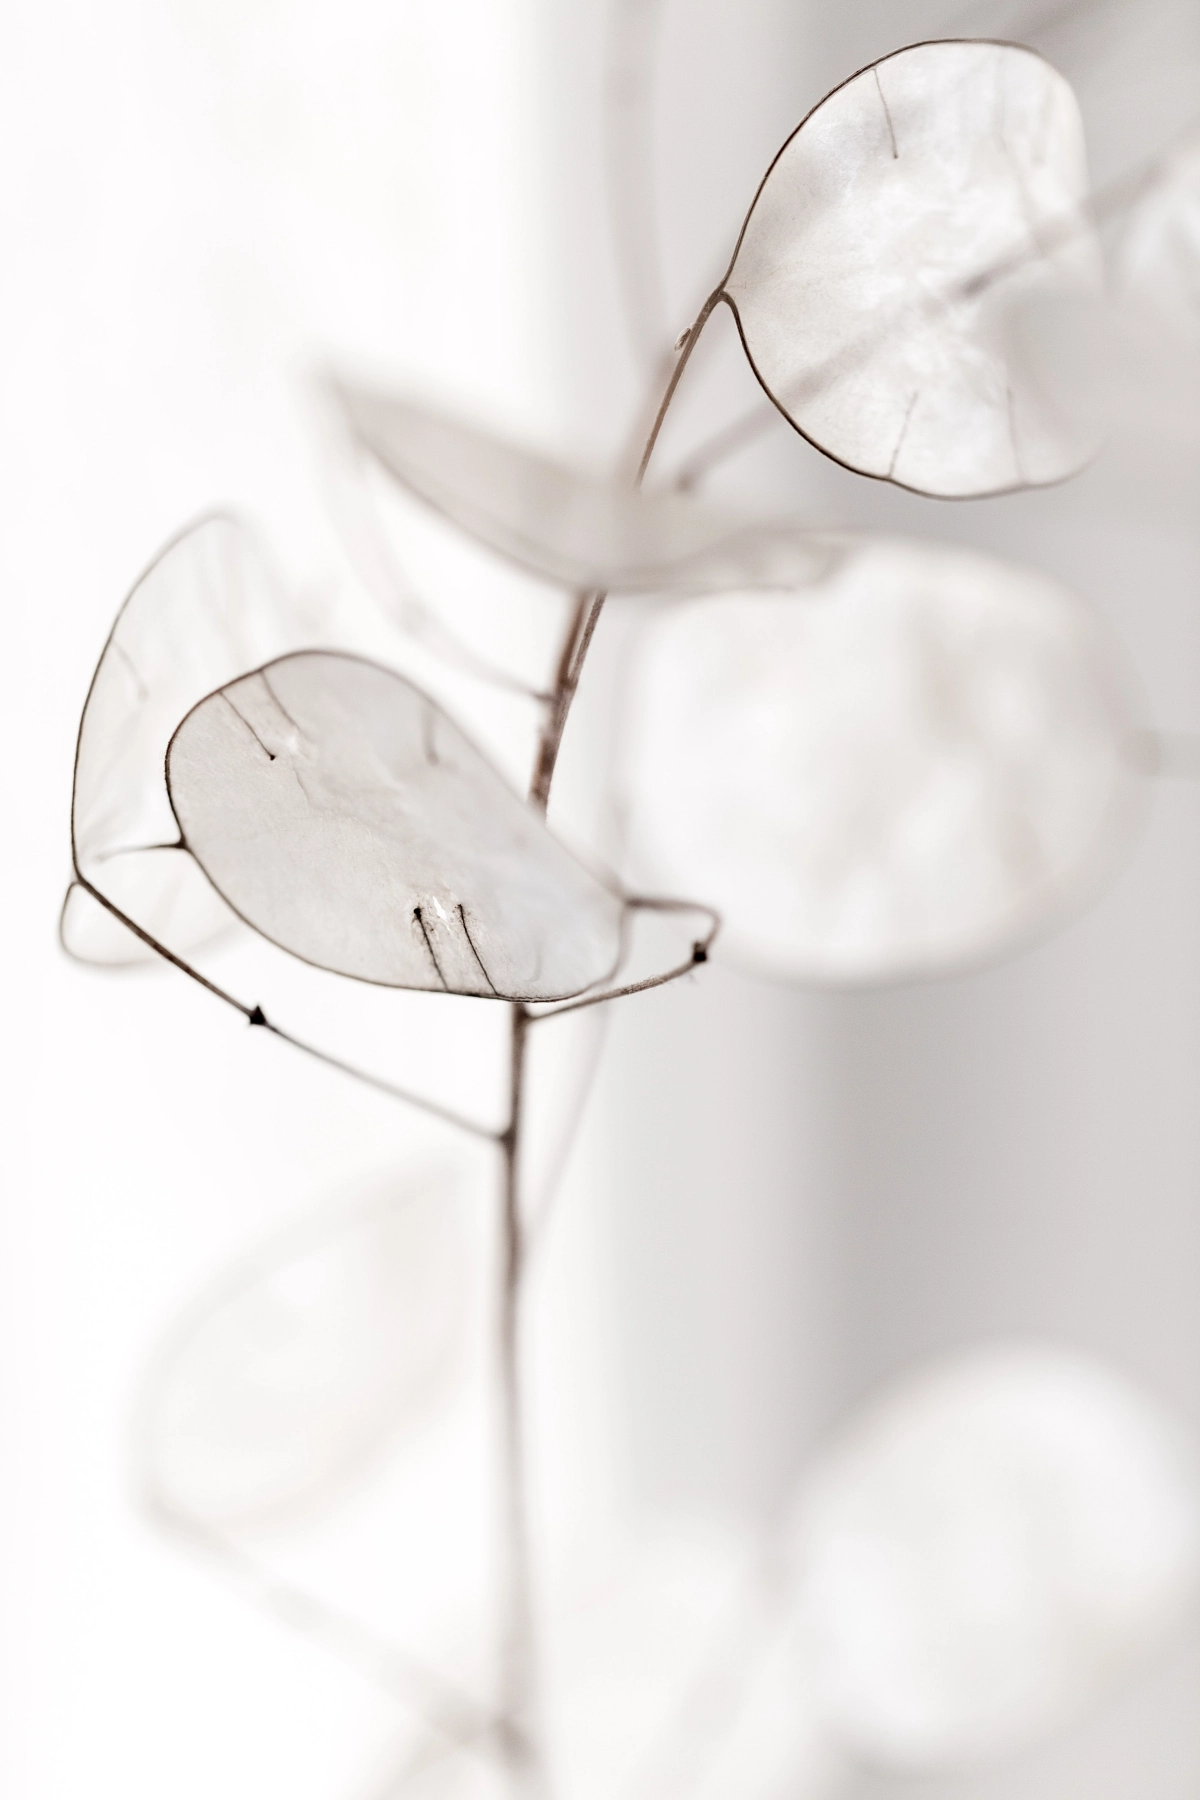 branche fleurs sechees feuilles transparentes fenetre lumiere piece blanche